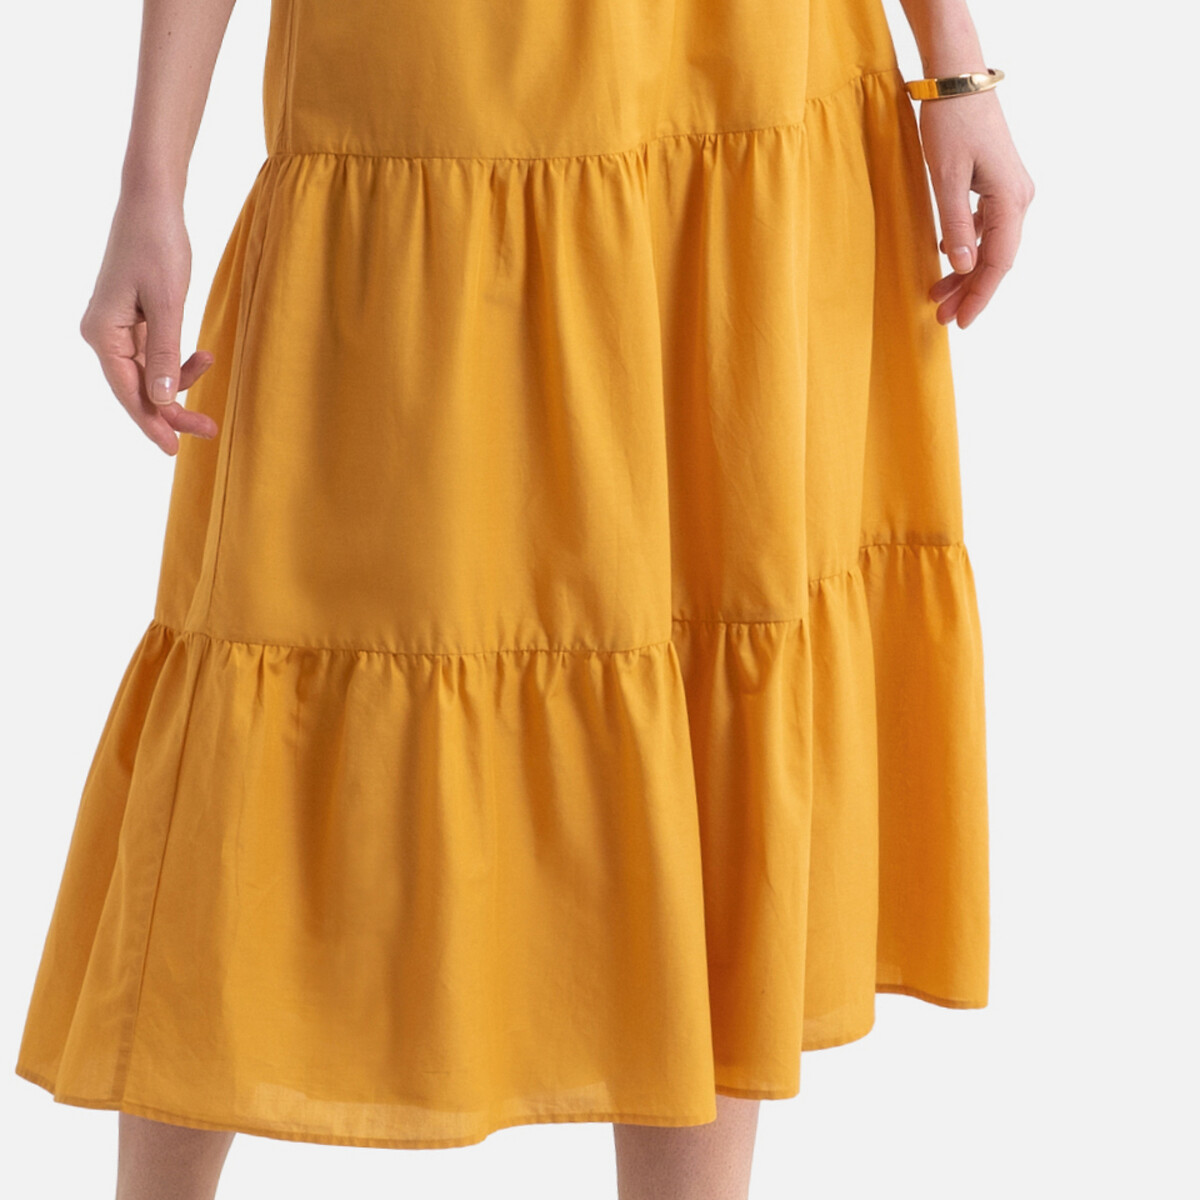 Платье LaRedoute Длинное расклешенное с короткими рукавами 46 (FR) - 52 (RUS) желтый, размер 46 (FR) - 52 (RUS) Длинное расклешенное с короткими рукавами 46 (FR) - 52 (RUS) желтый - фото 3